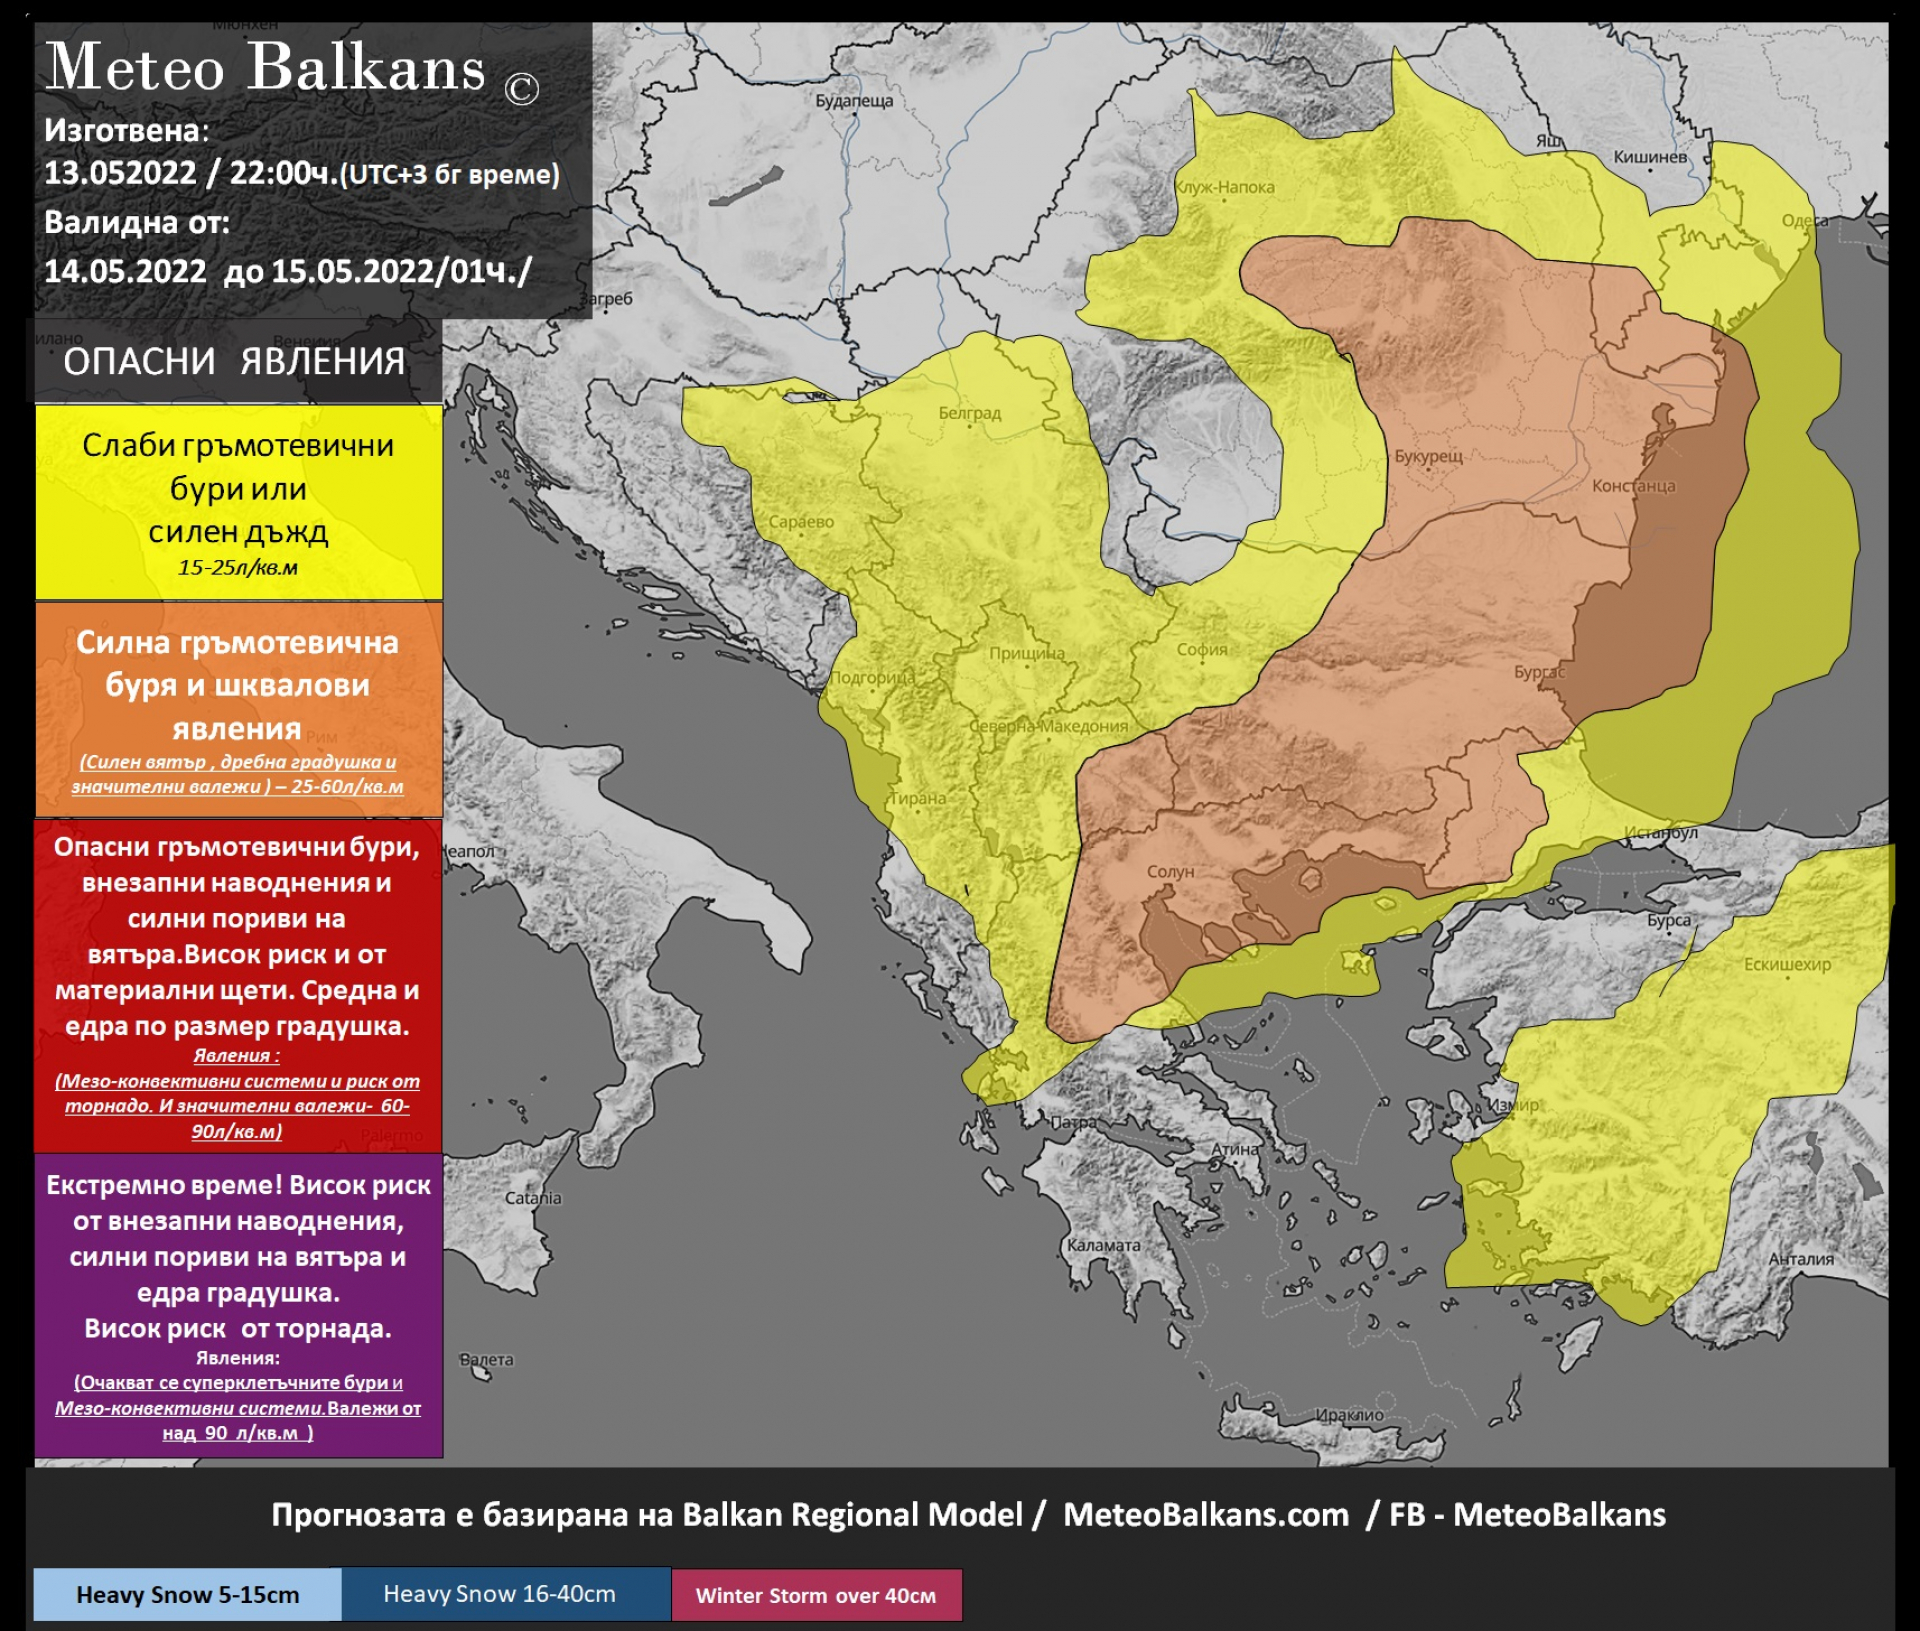 Meteo Balkans алармира за луди обрати с времето в събота 